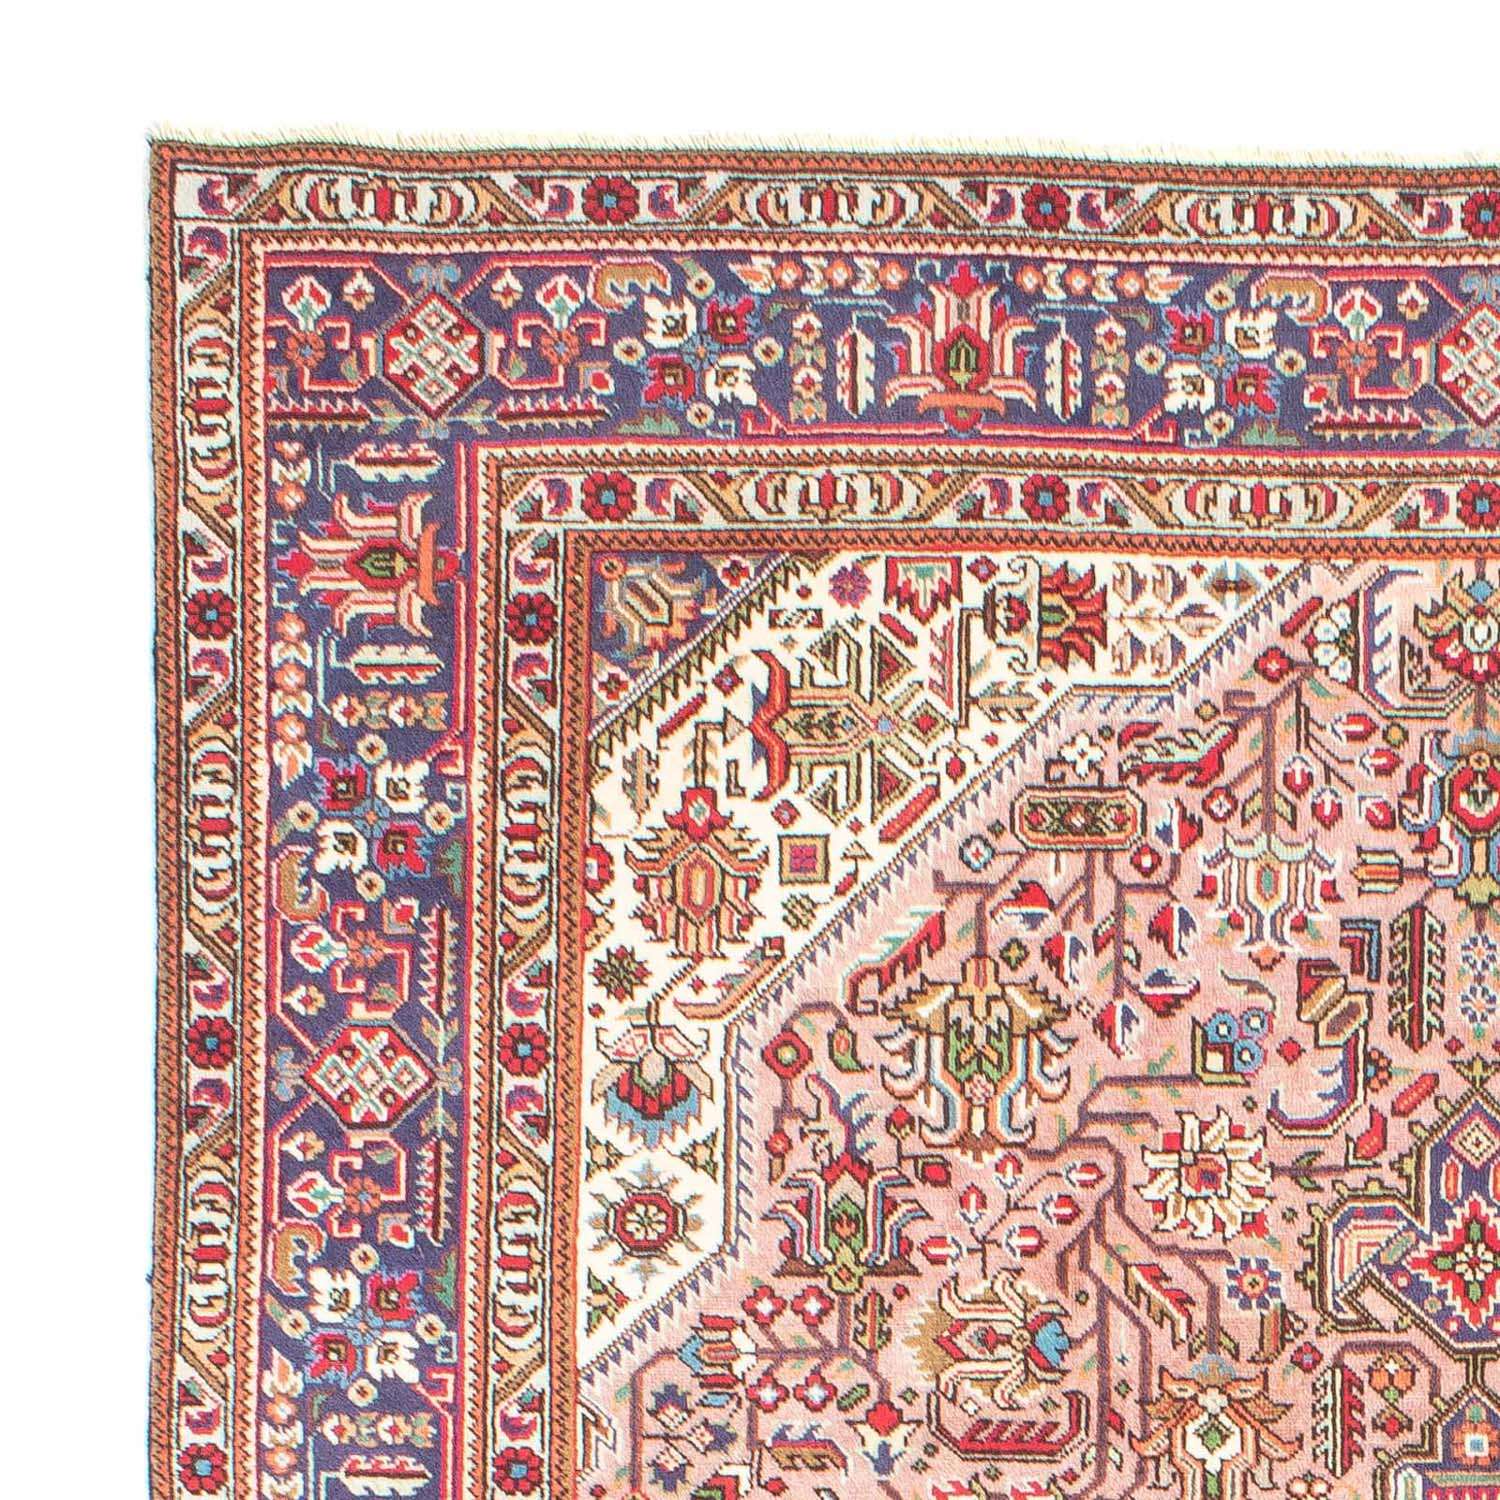 Persisk matta - Tabriz - 296 x 201 cm - ljusröd